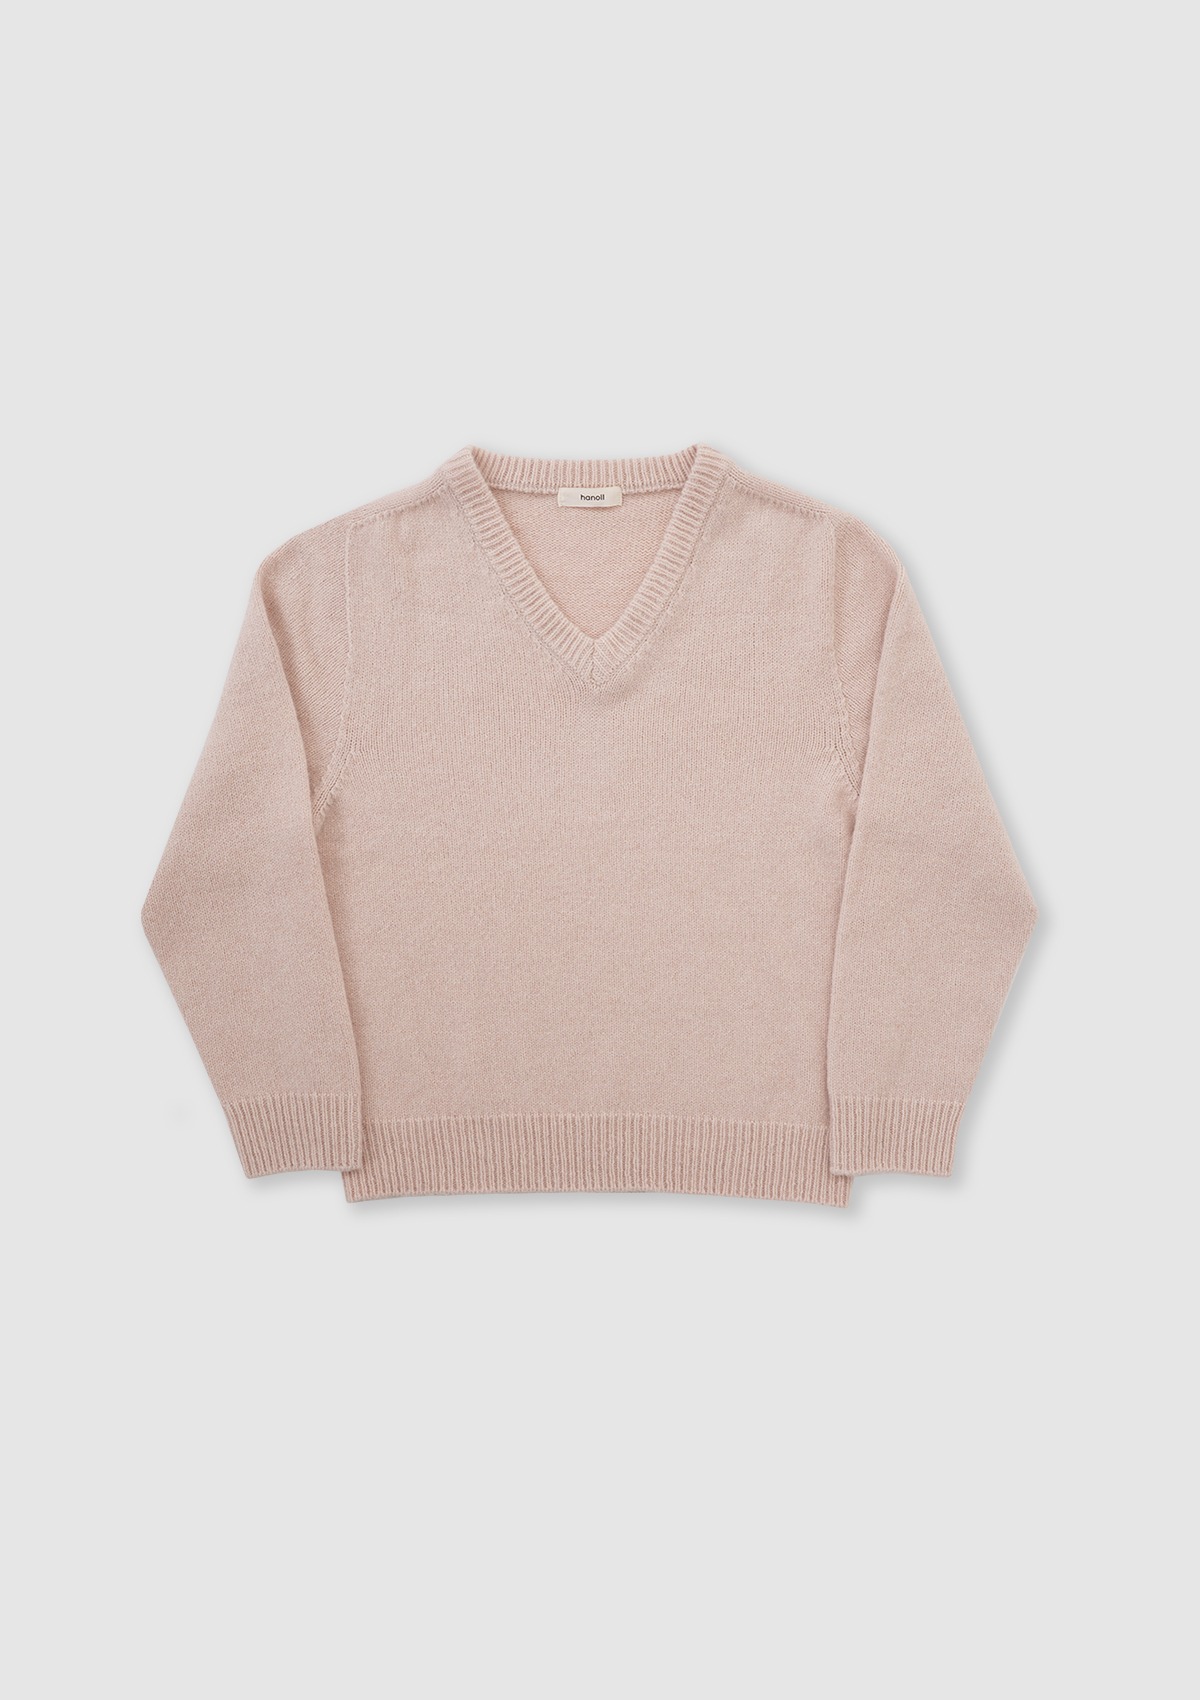 Leez knit (Pink)